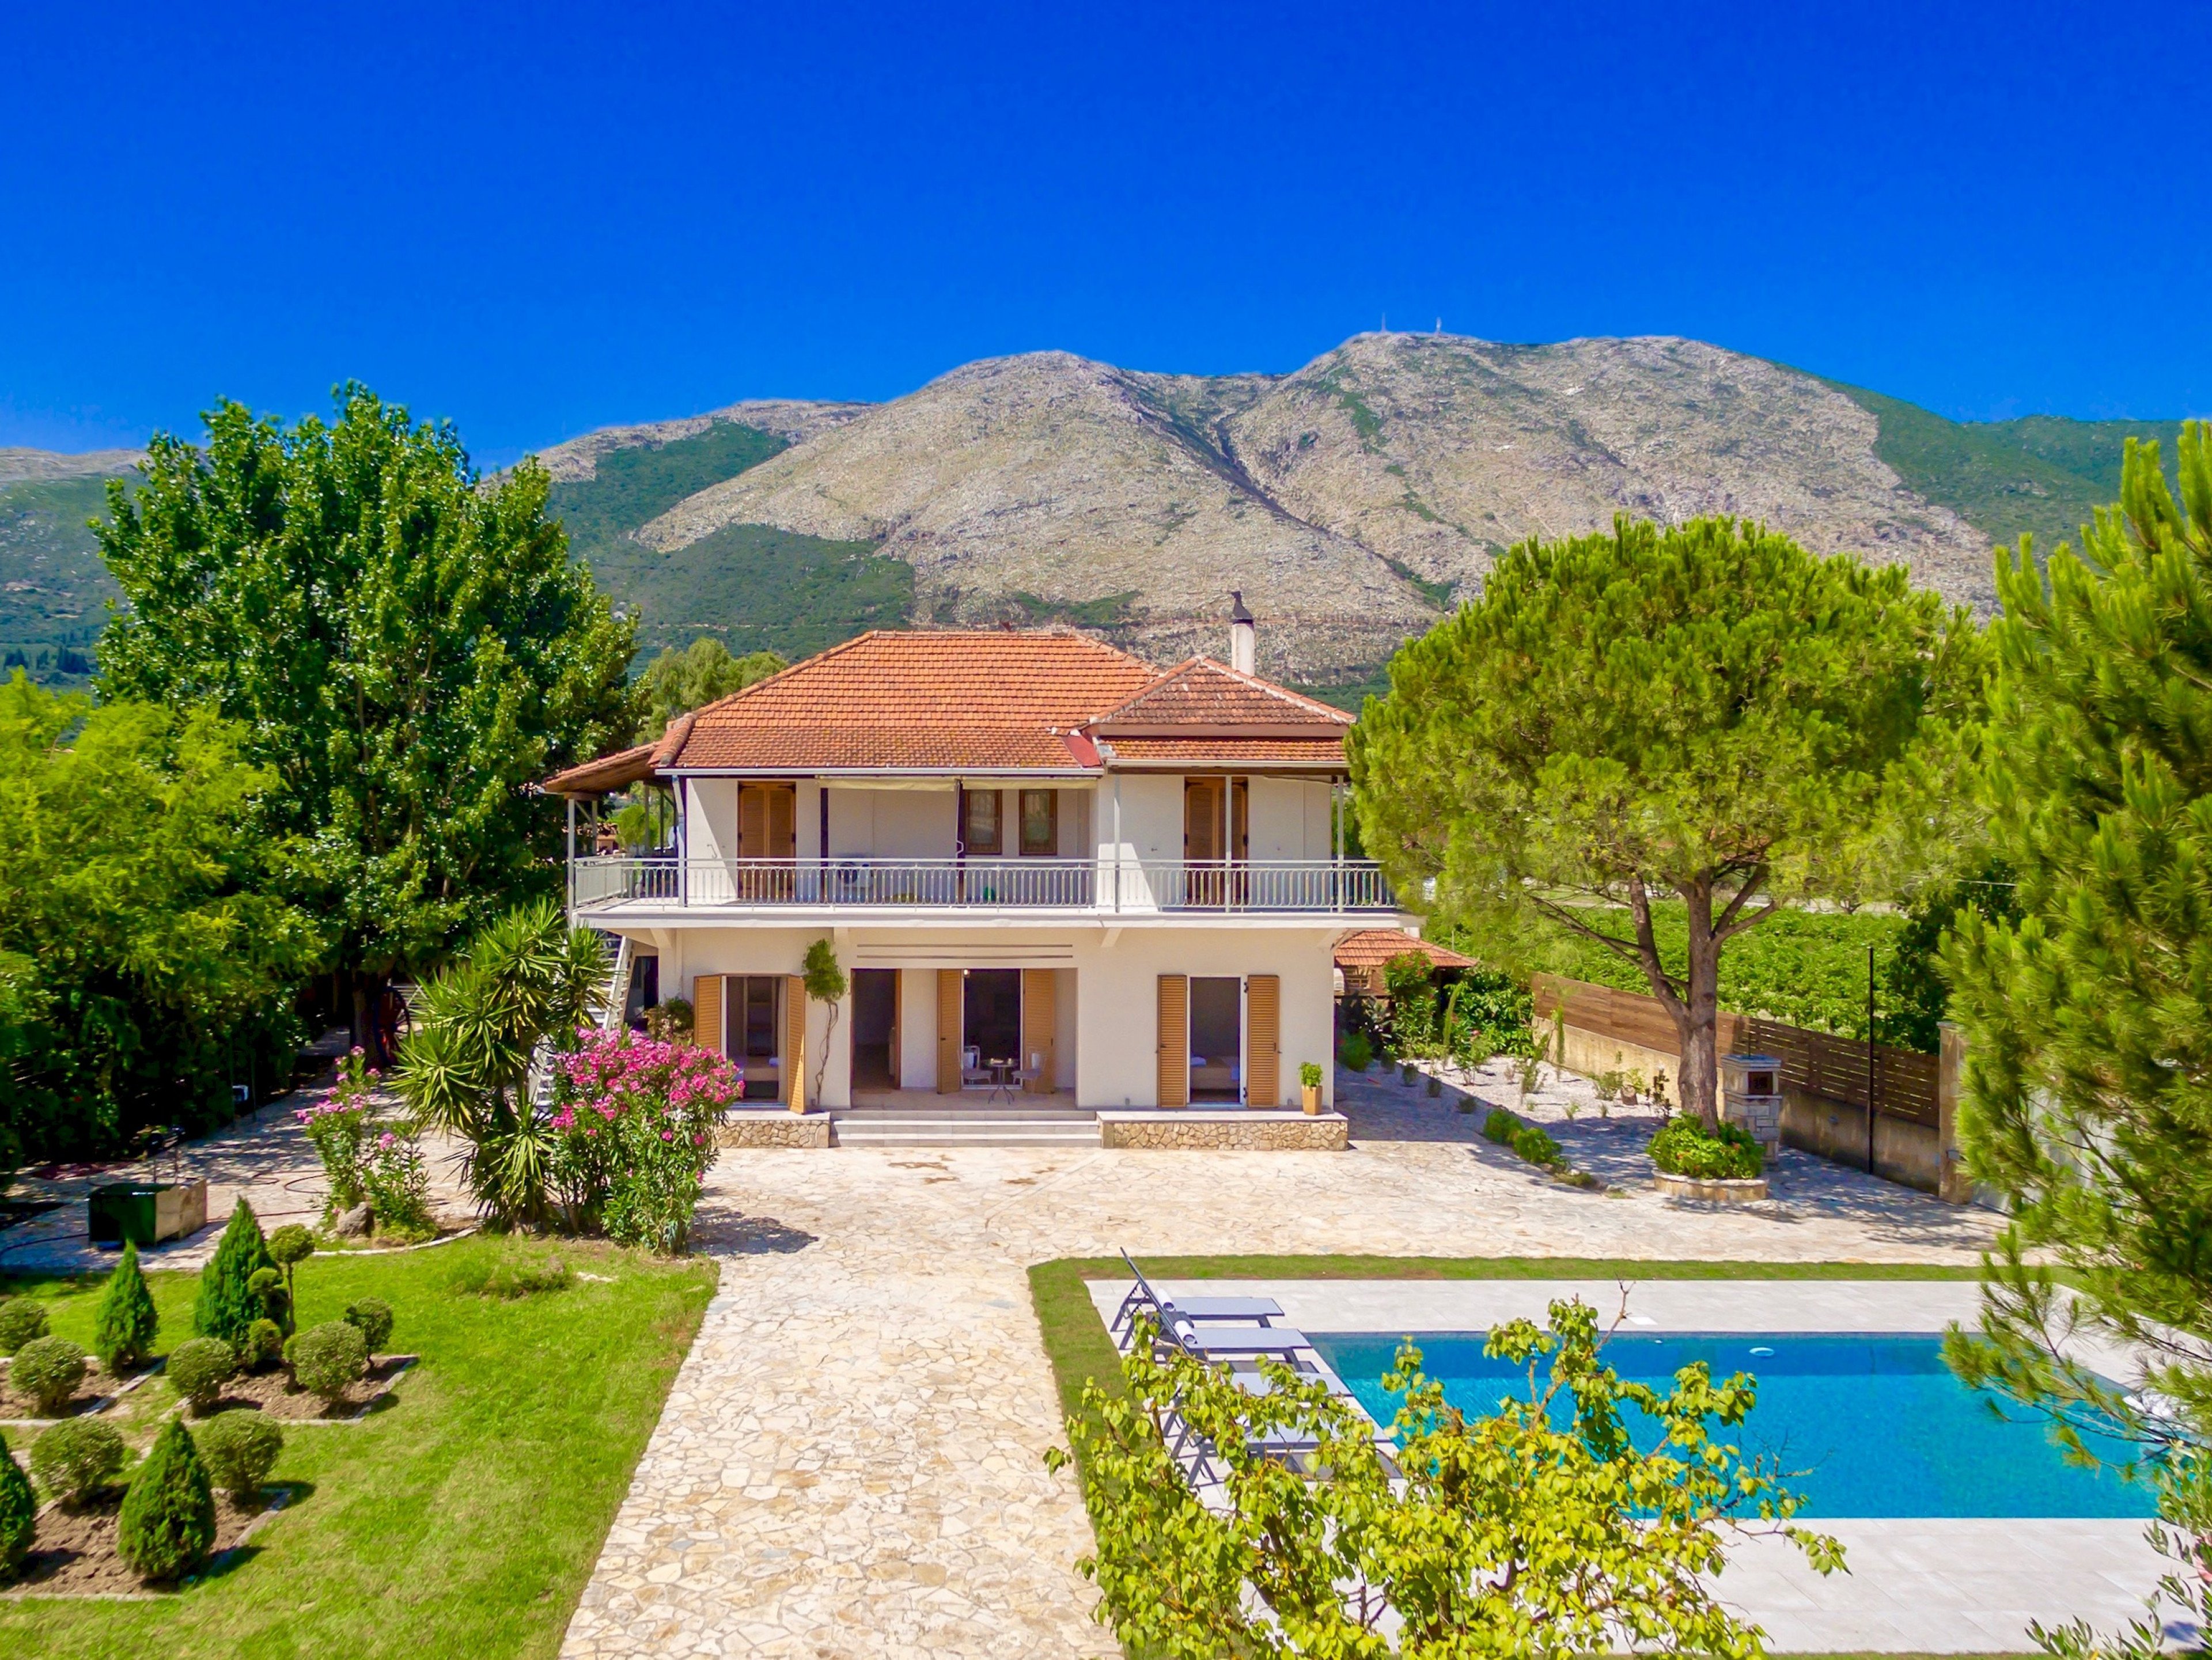 Villa Agricola villas in Greece